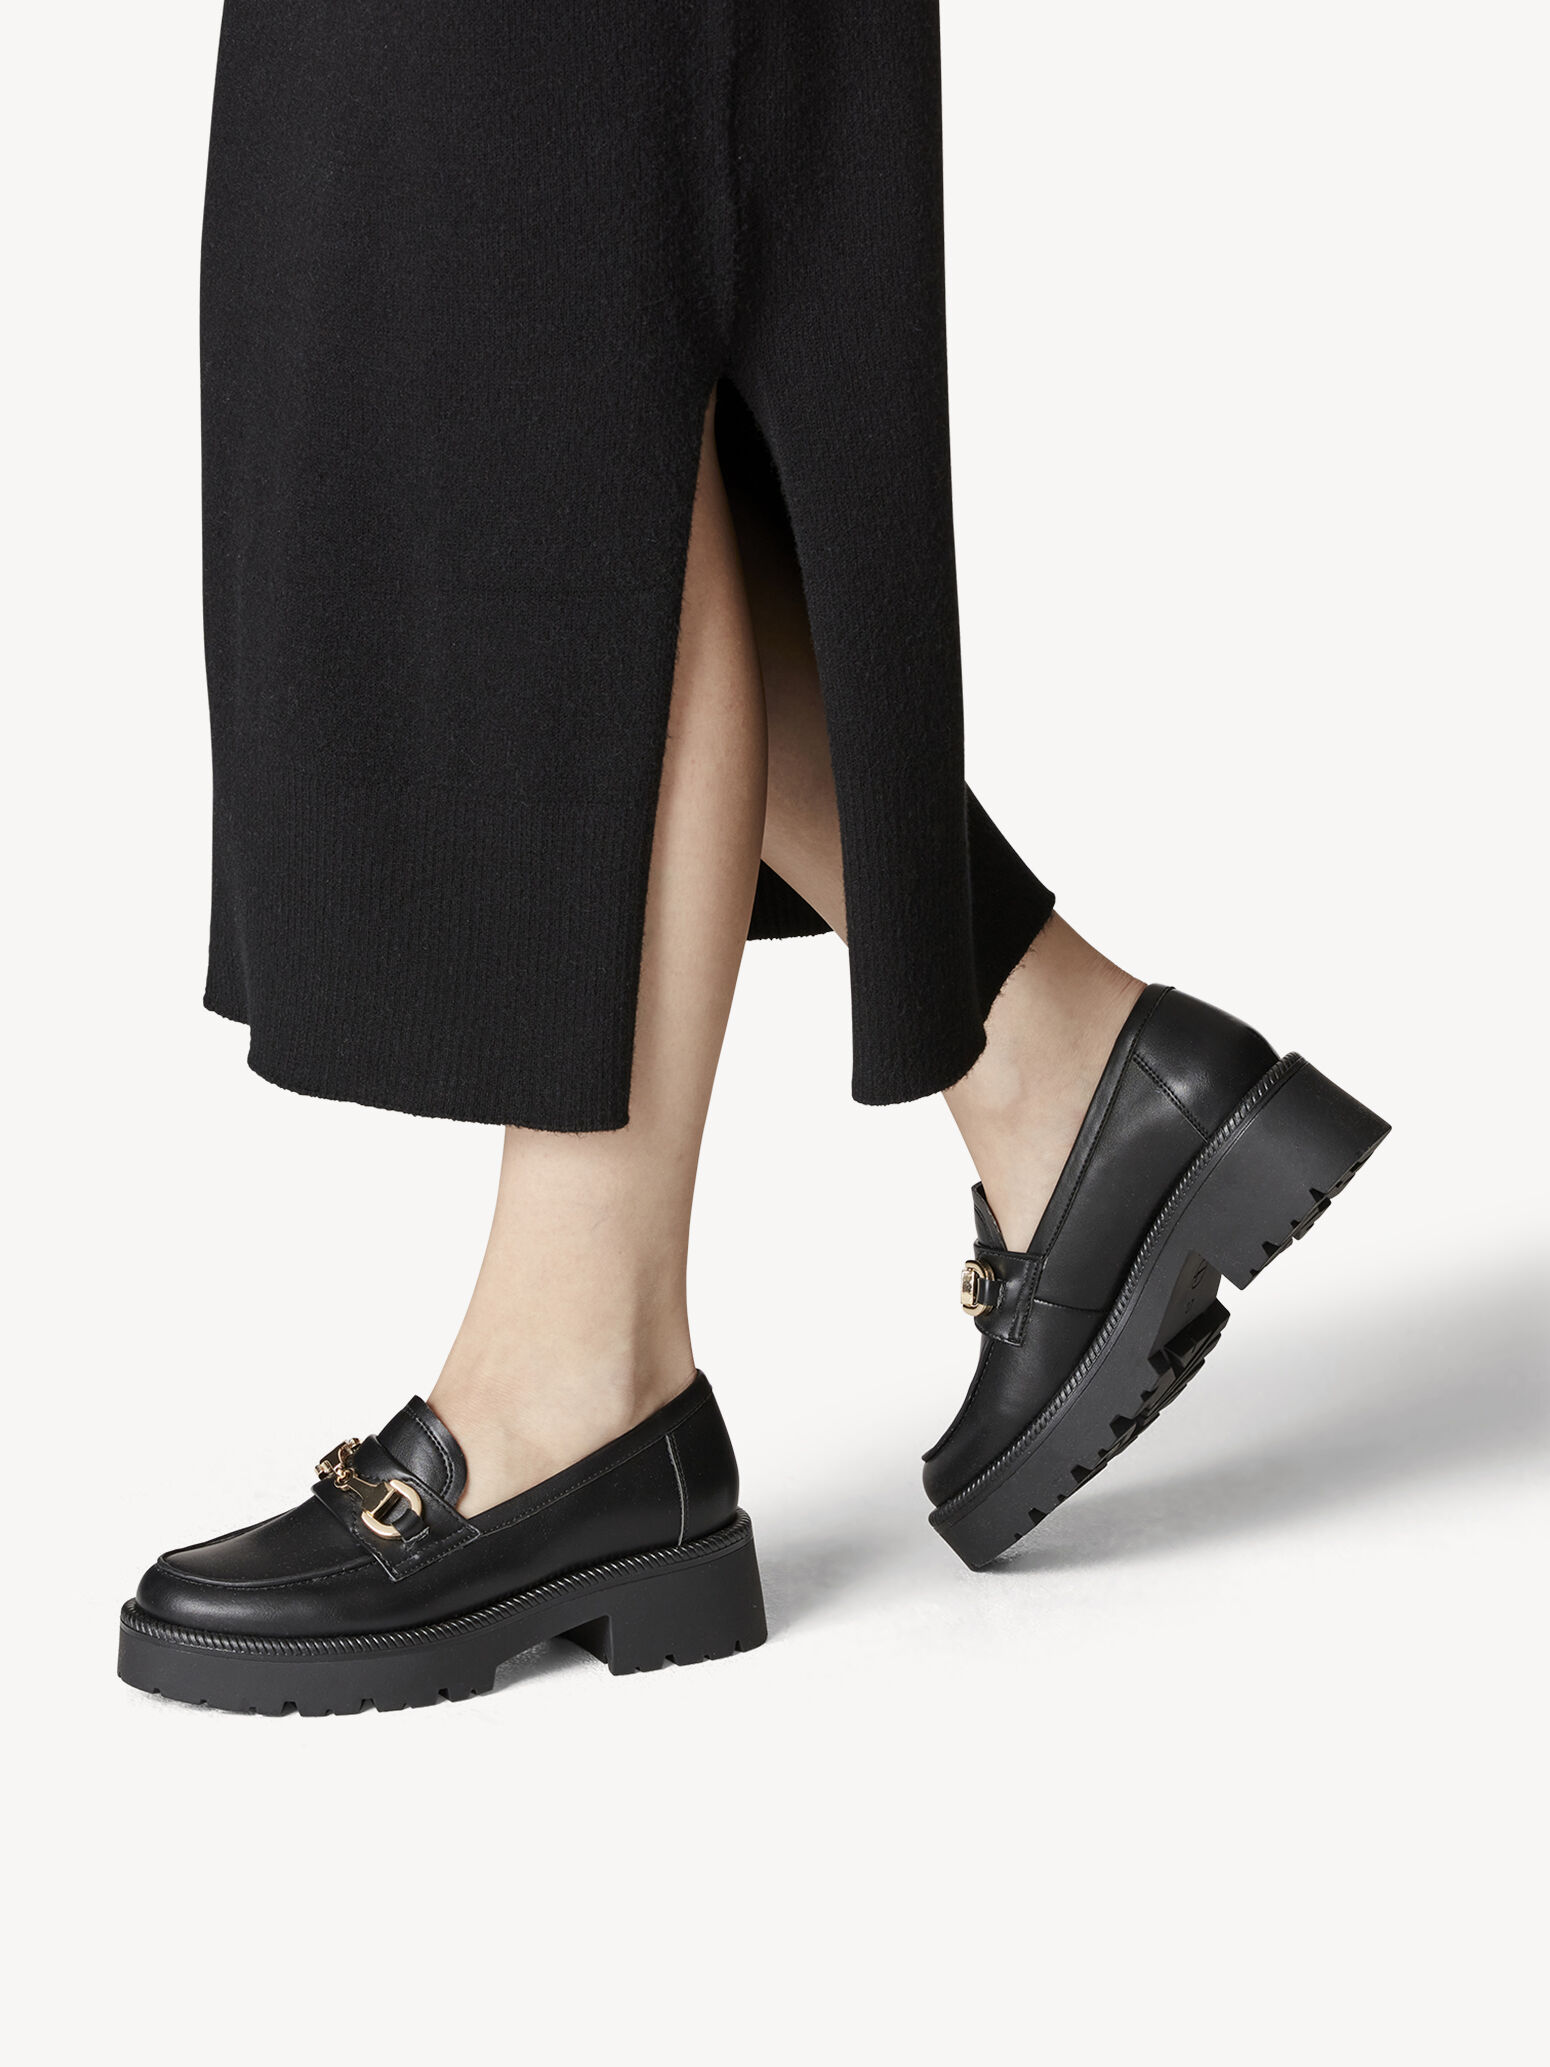 Schoenen Lage schoenen Instappers Tom Tailor Instappers zwart gedrukte letters casual uitstraling 